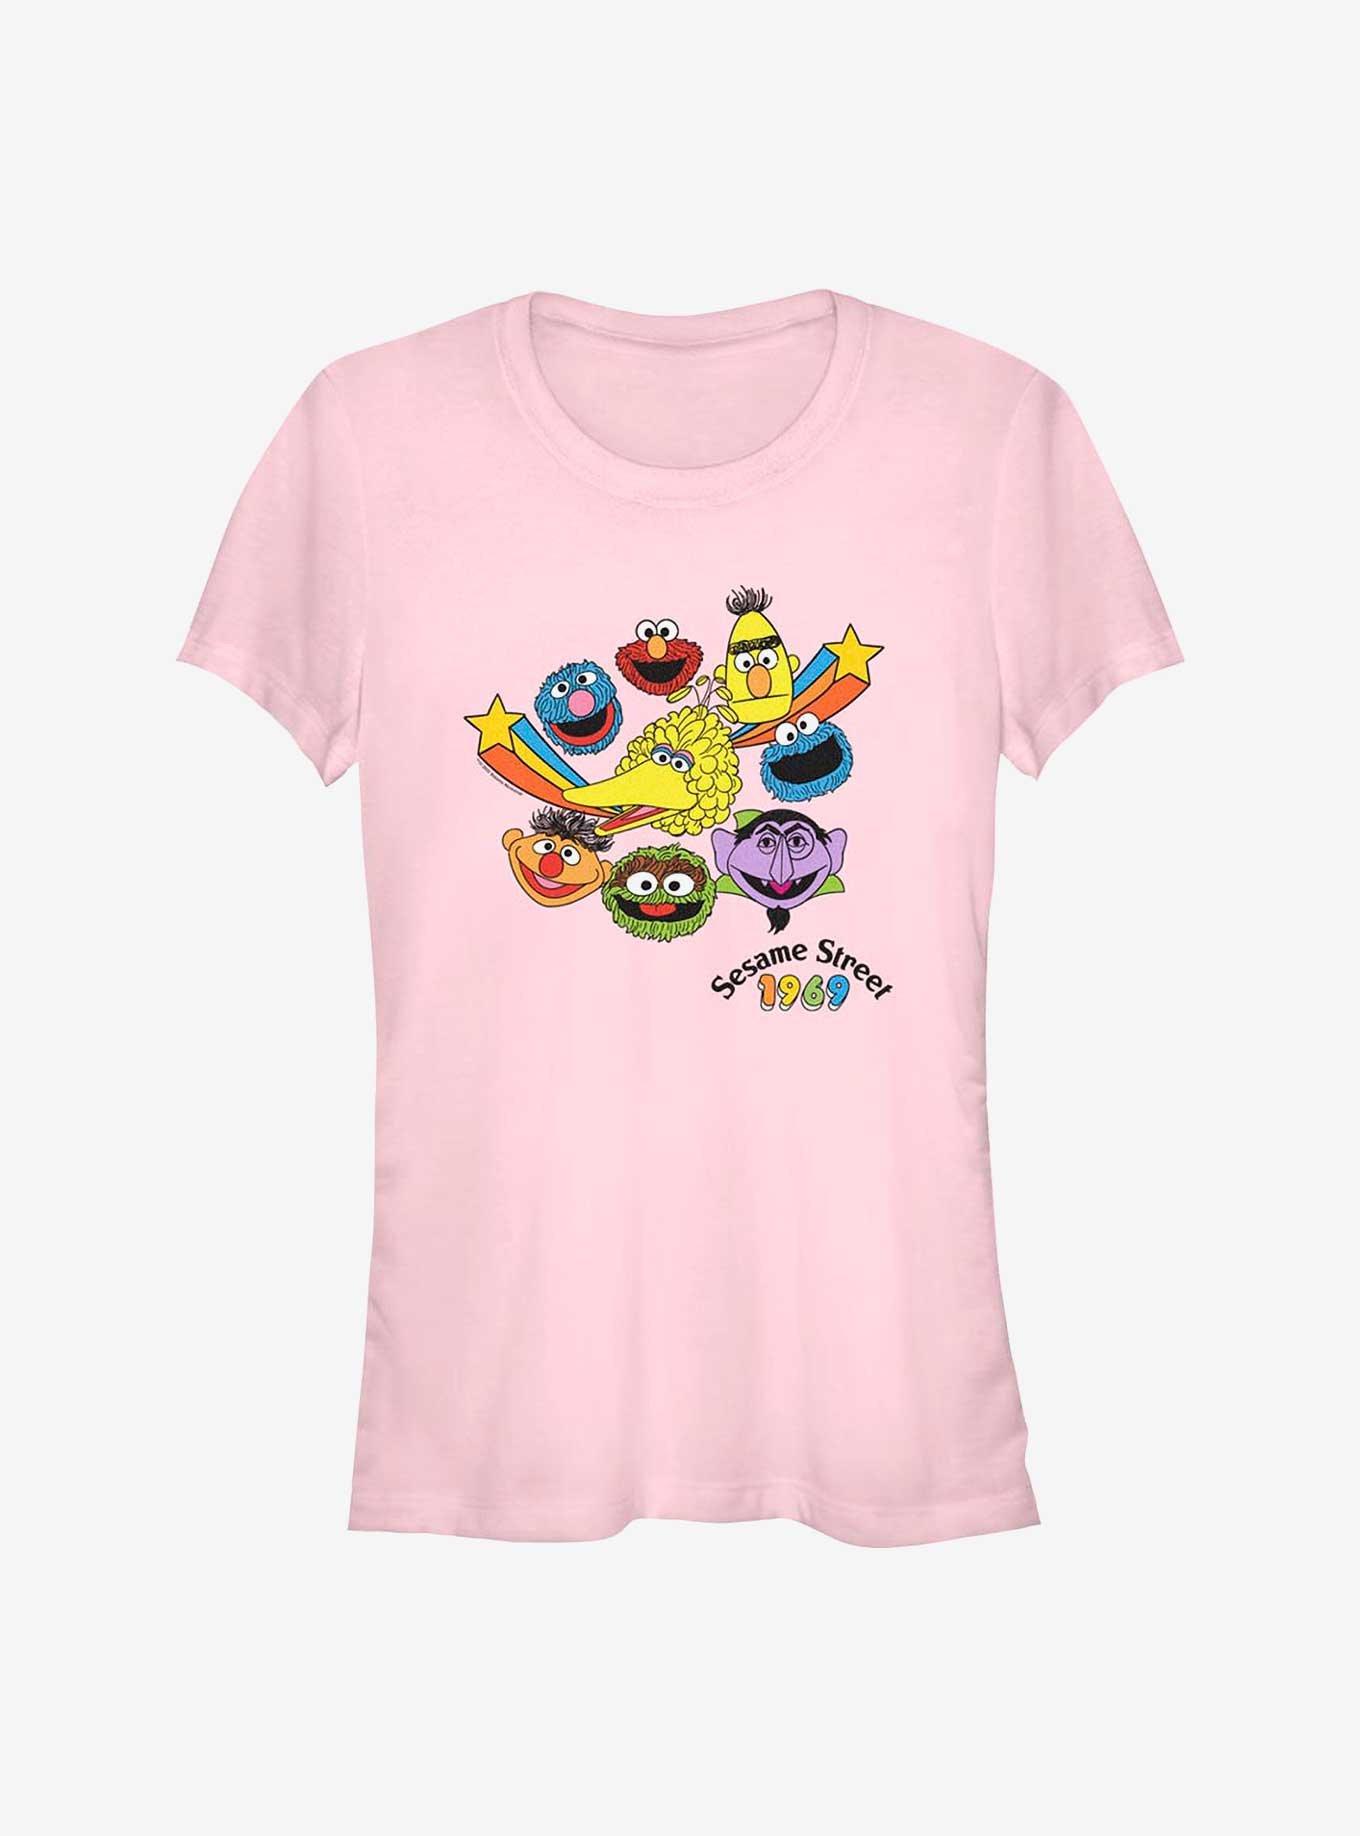 Sesame Street 1969 Heads Girls T-Shirt, LIGHT PINK, hi-res